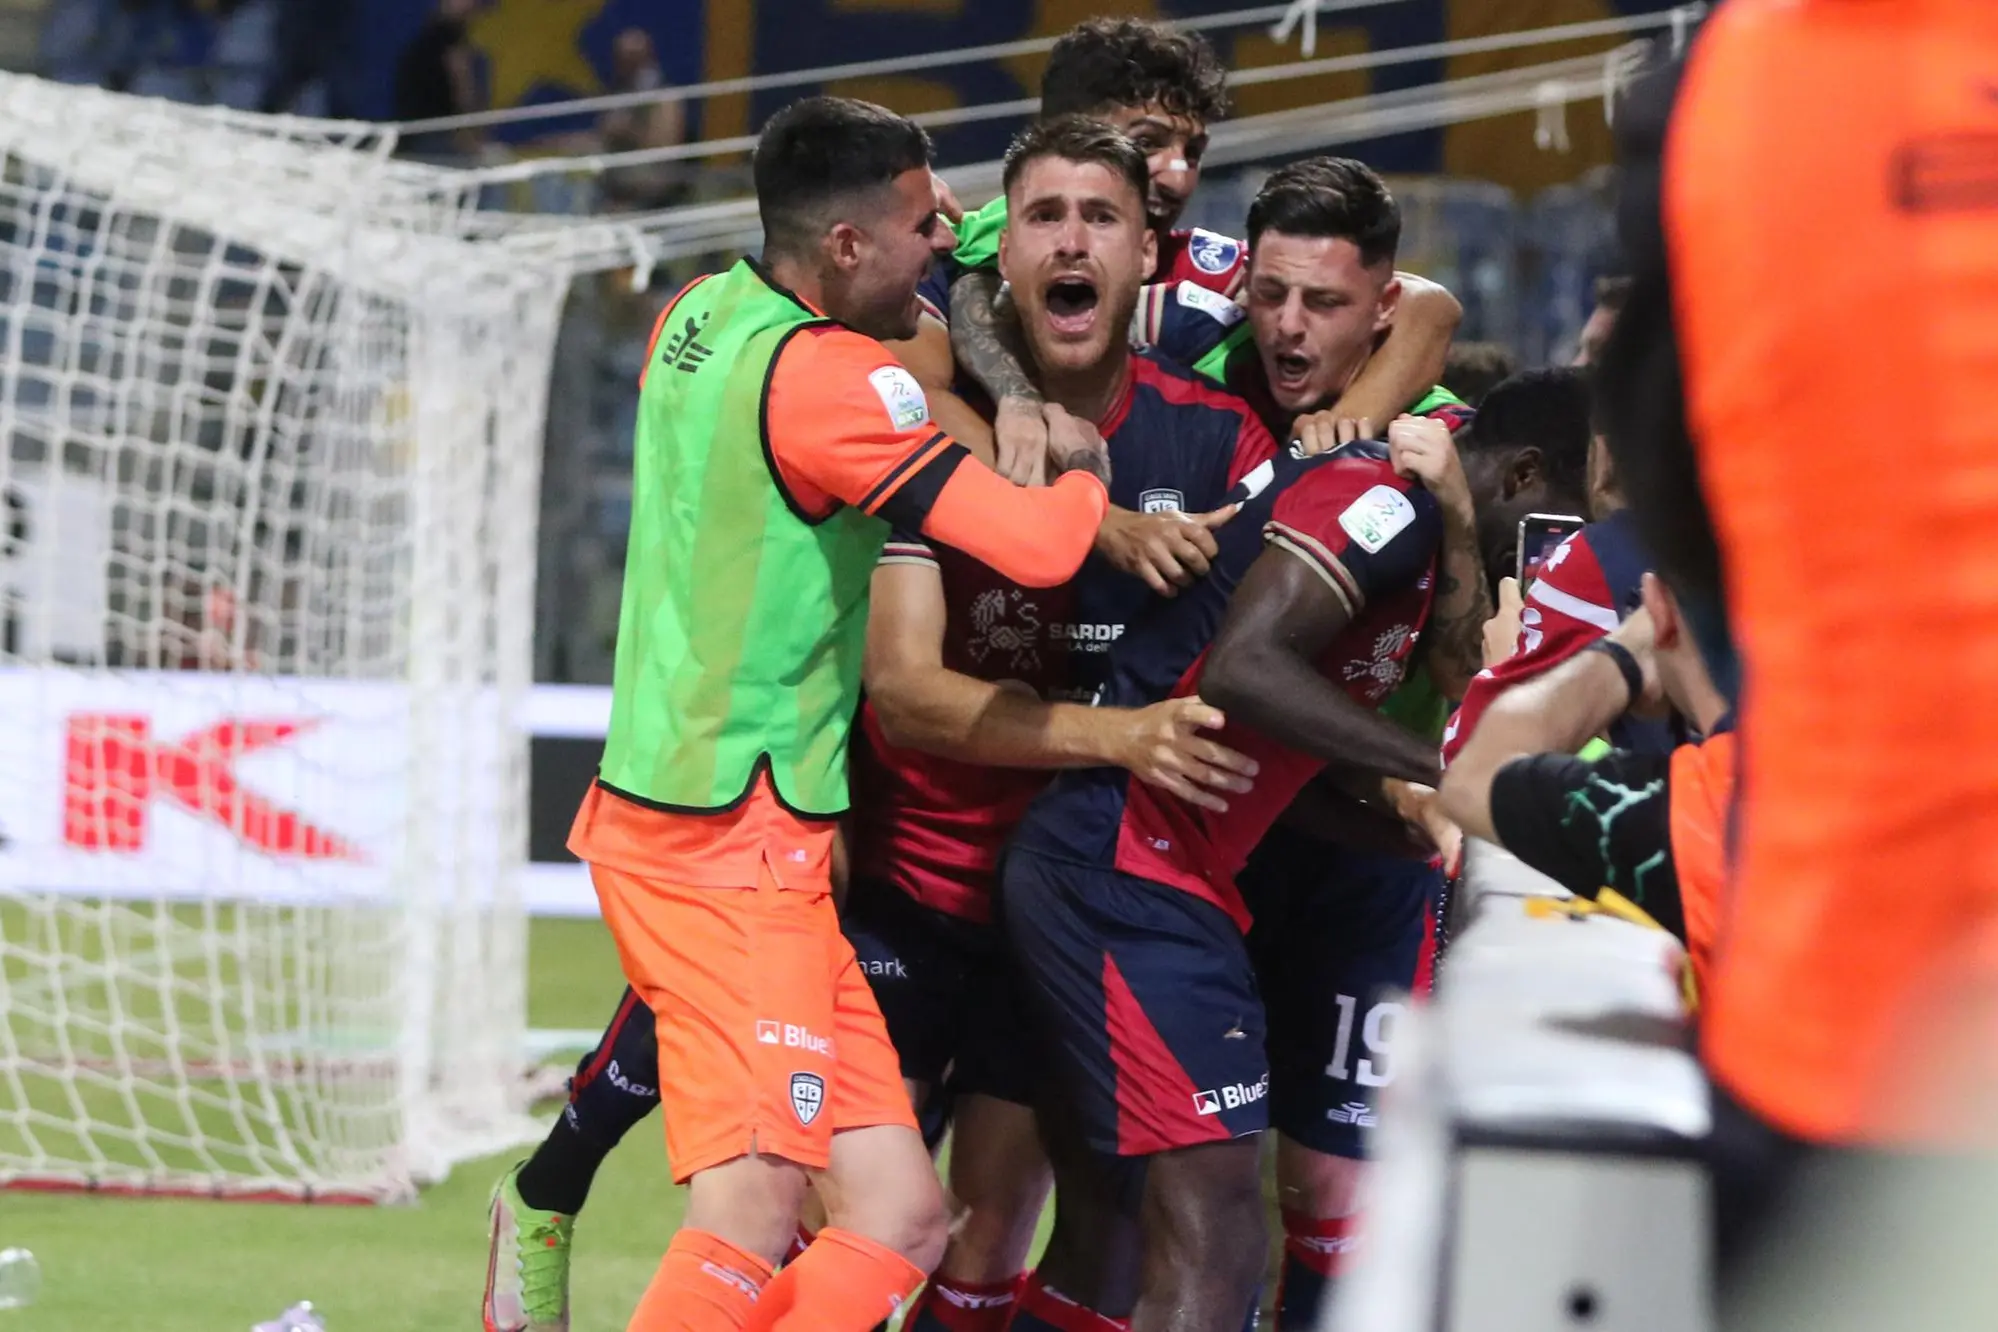 L'esplosione di gioia dei rossoblù dopo il secondo gol di Luvumbo  (Fabio Murru)